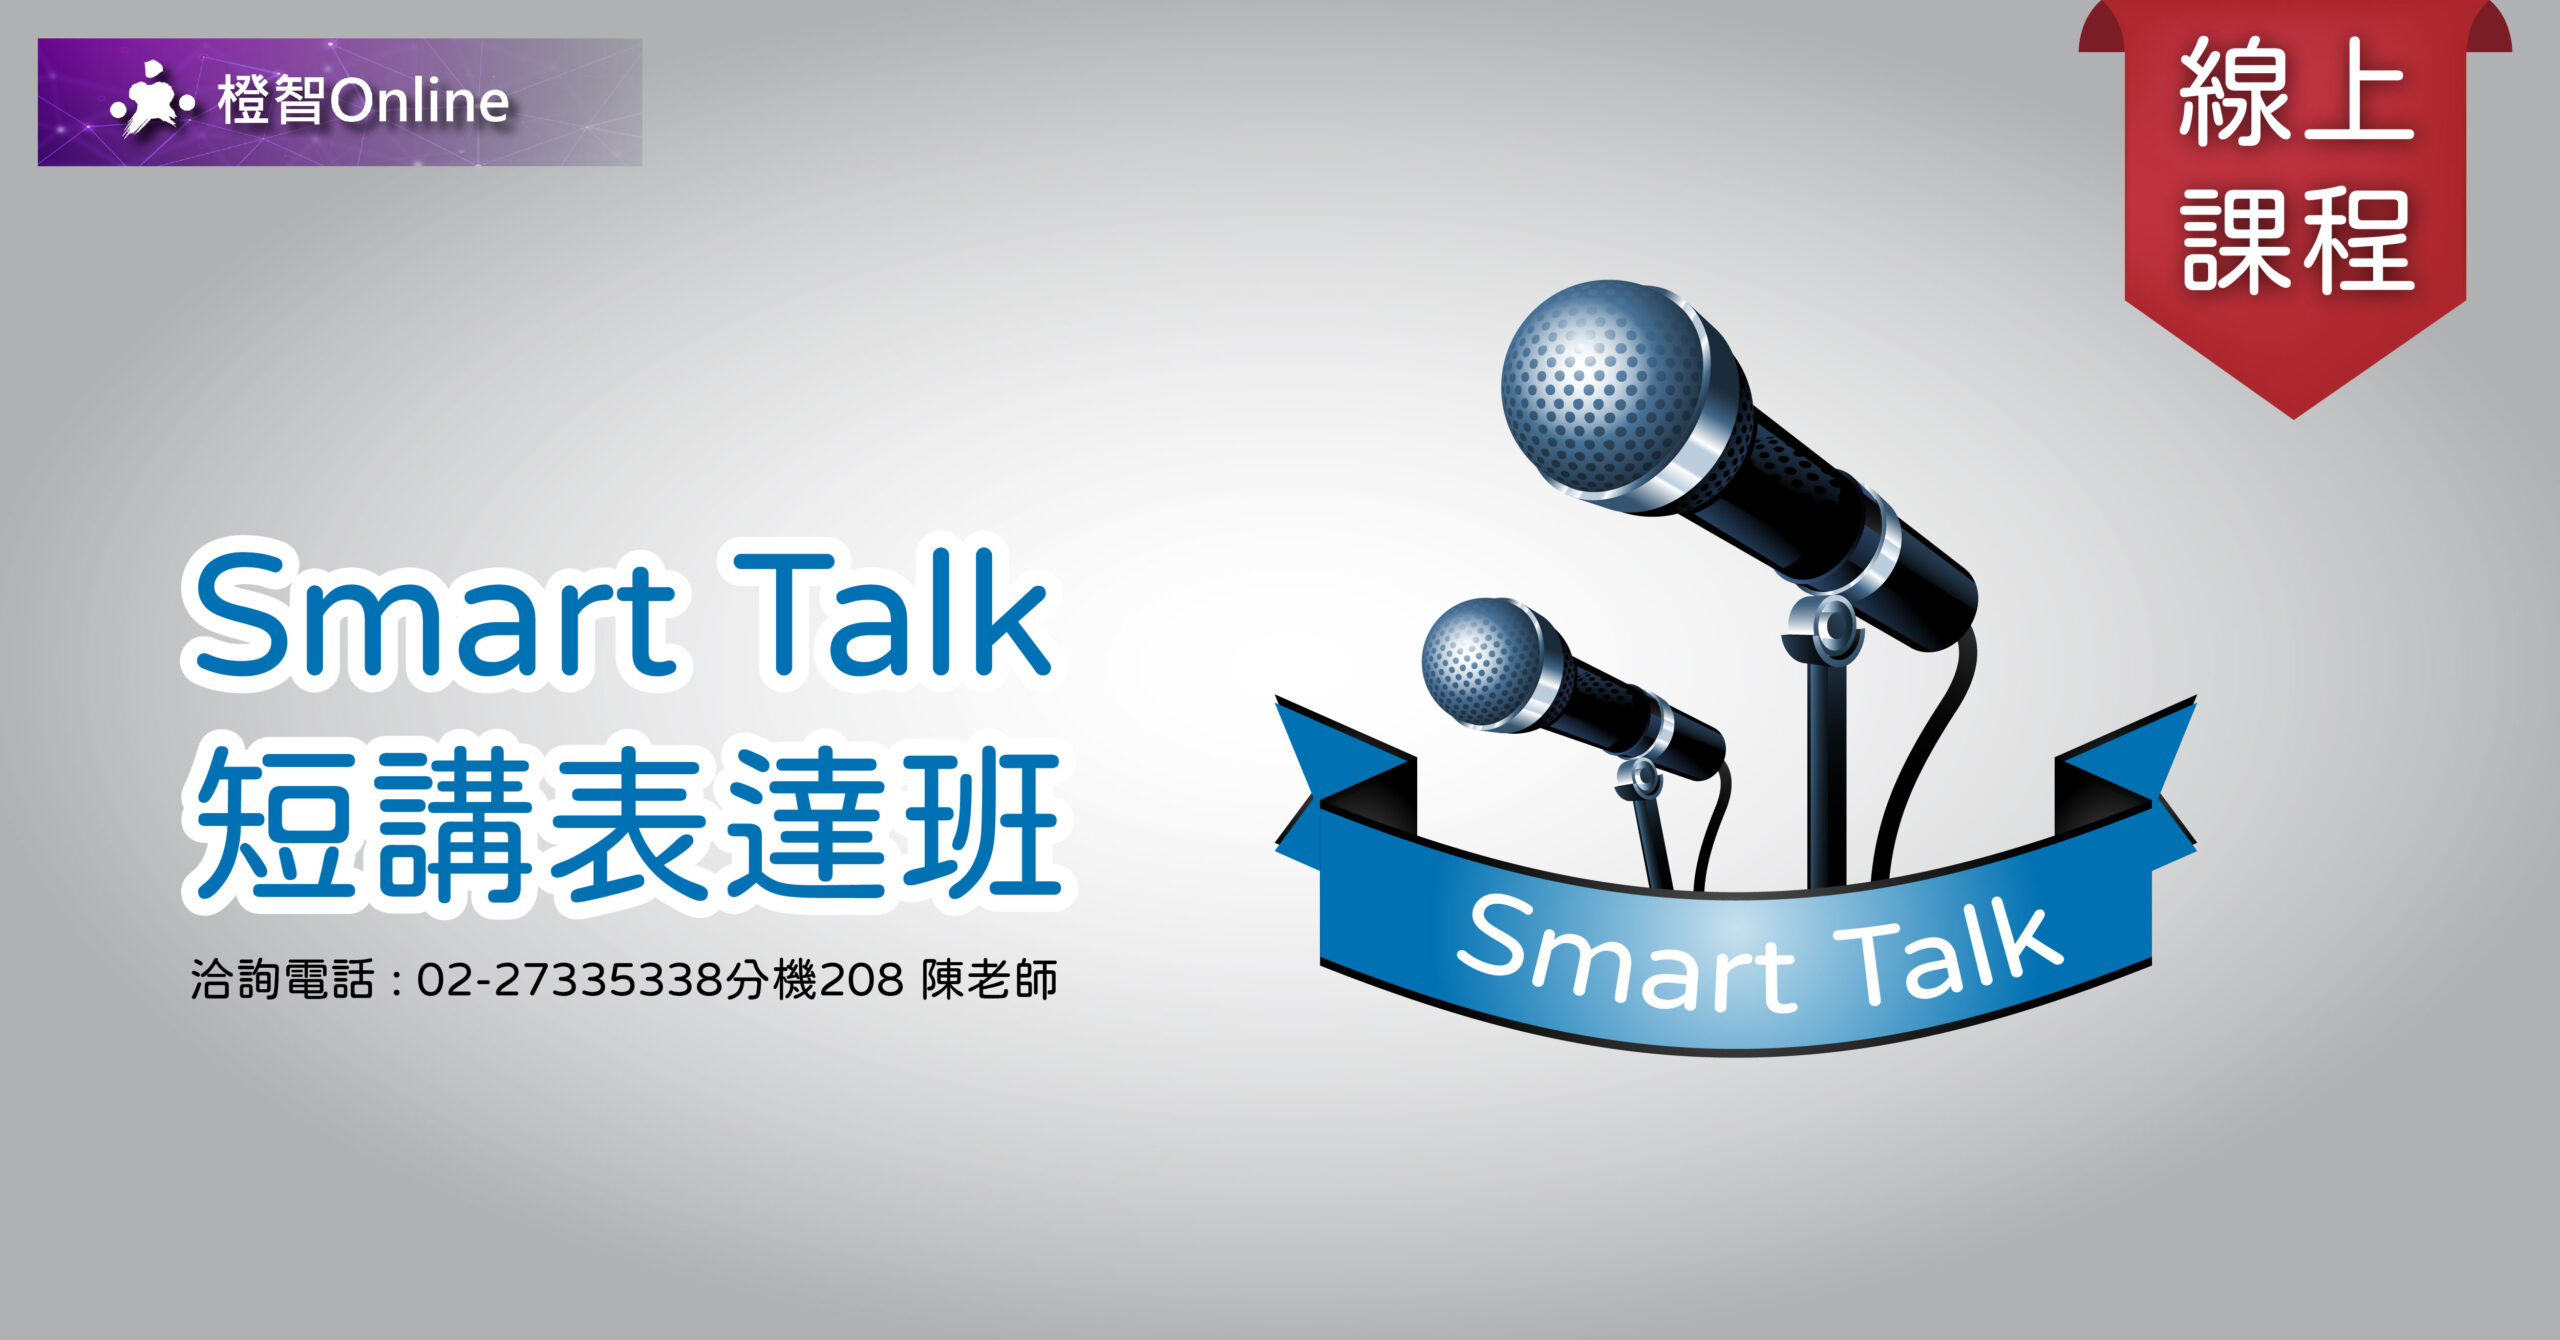 【線上課程】Smart Talk 短講表達班 溝通表達、邏輯整理、思考擴張